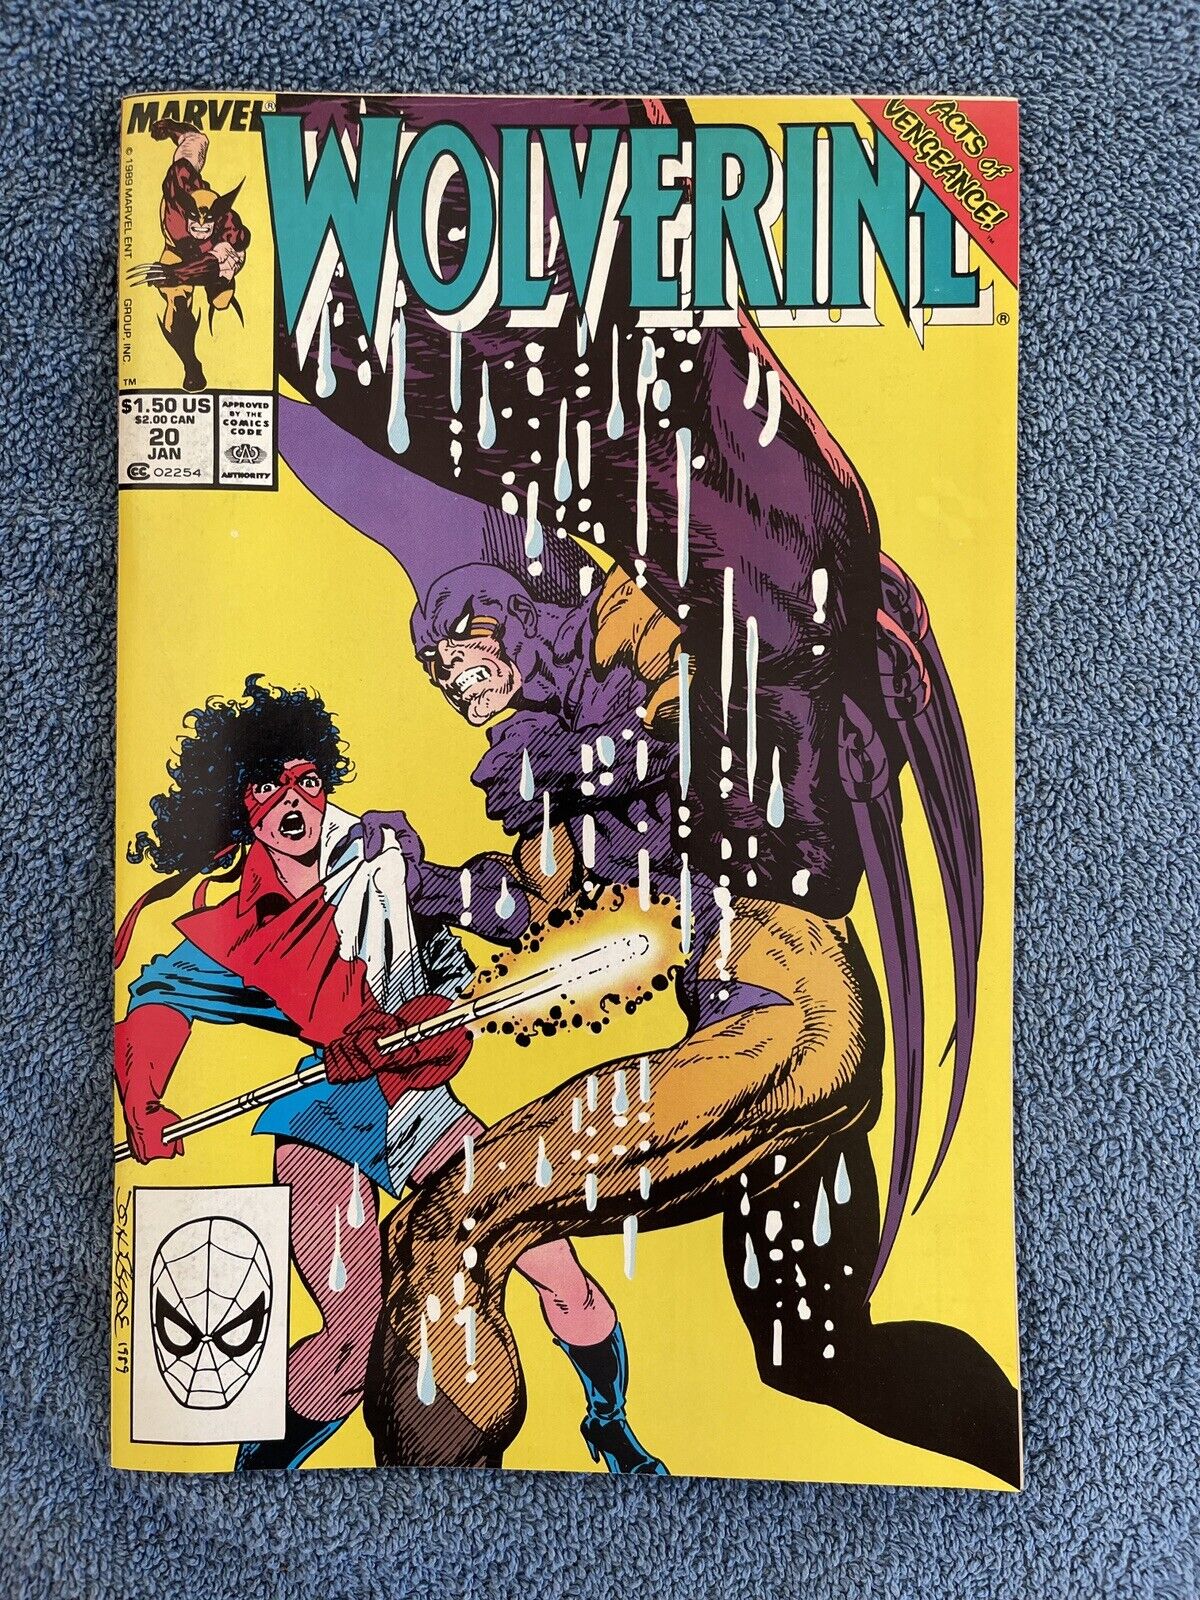 WOLVERINE #20 (Marvel, 1990) John Byrne ~ Acts of Vengeance